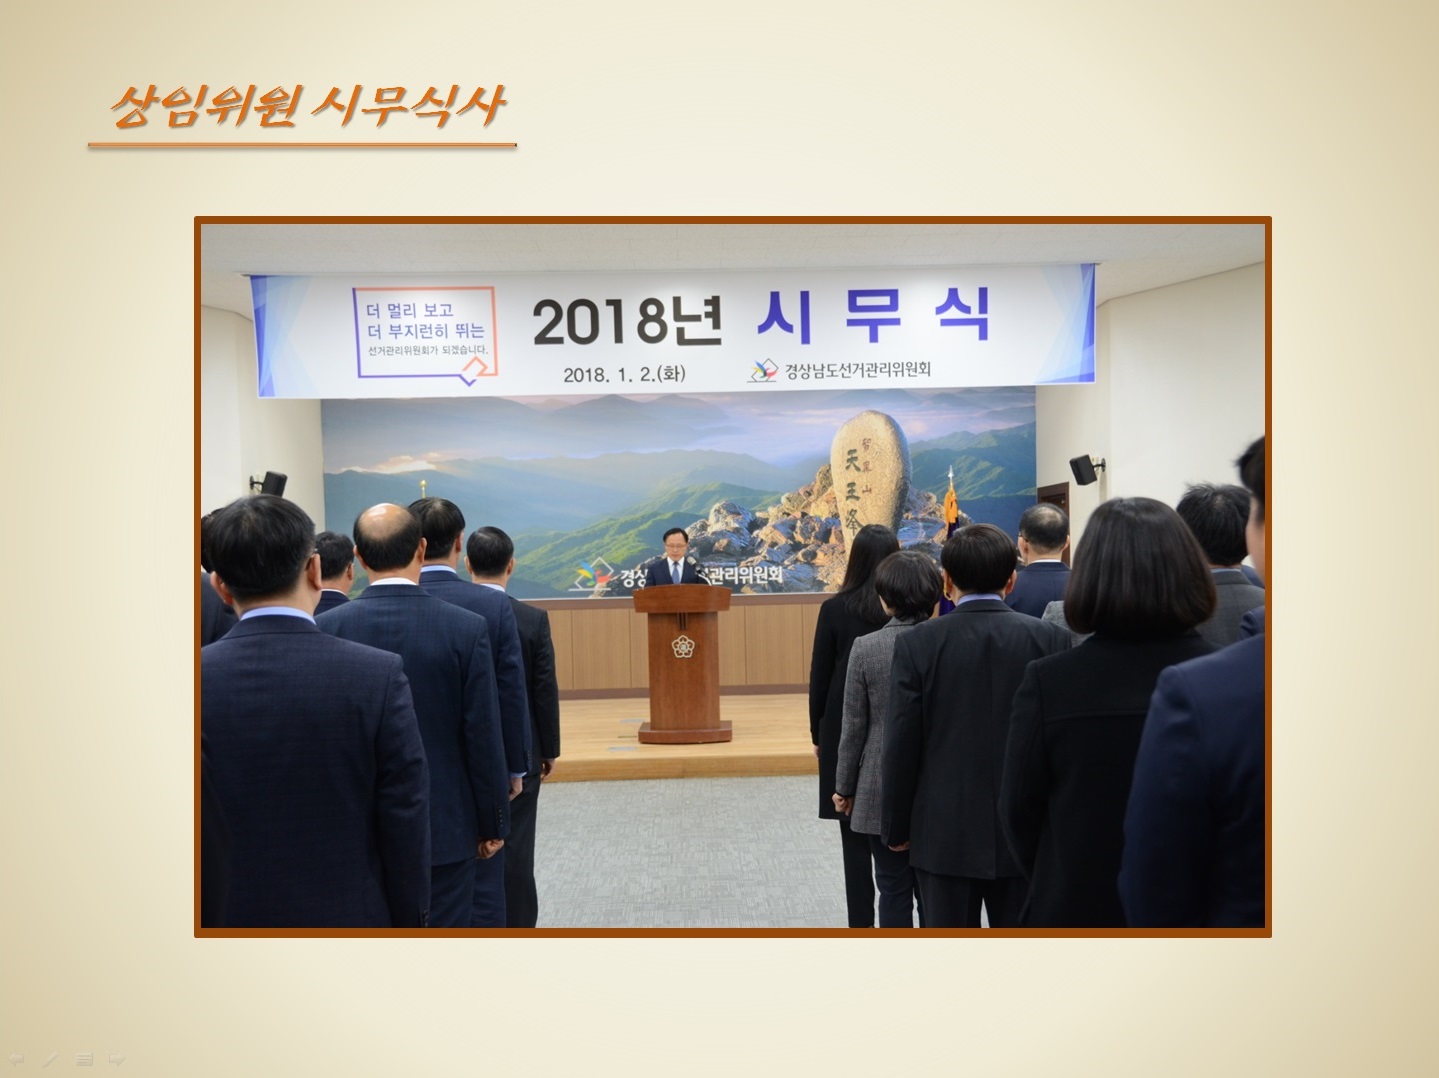 2018년 시무식을 진행하는 모습입니다. 김종영 상임위원의 시무식사 연설모습입니다.